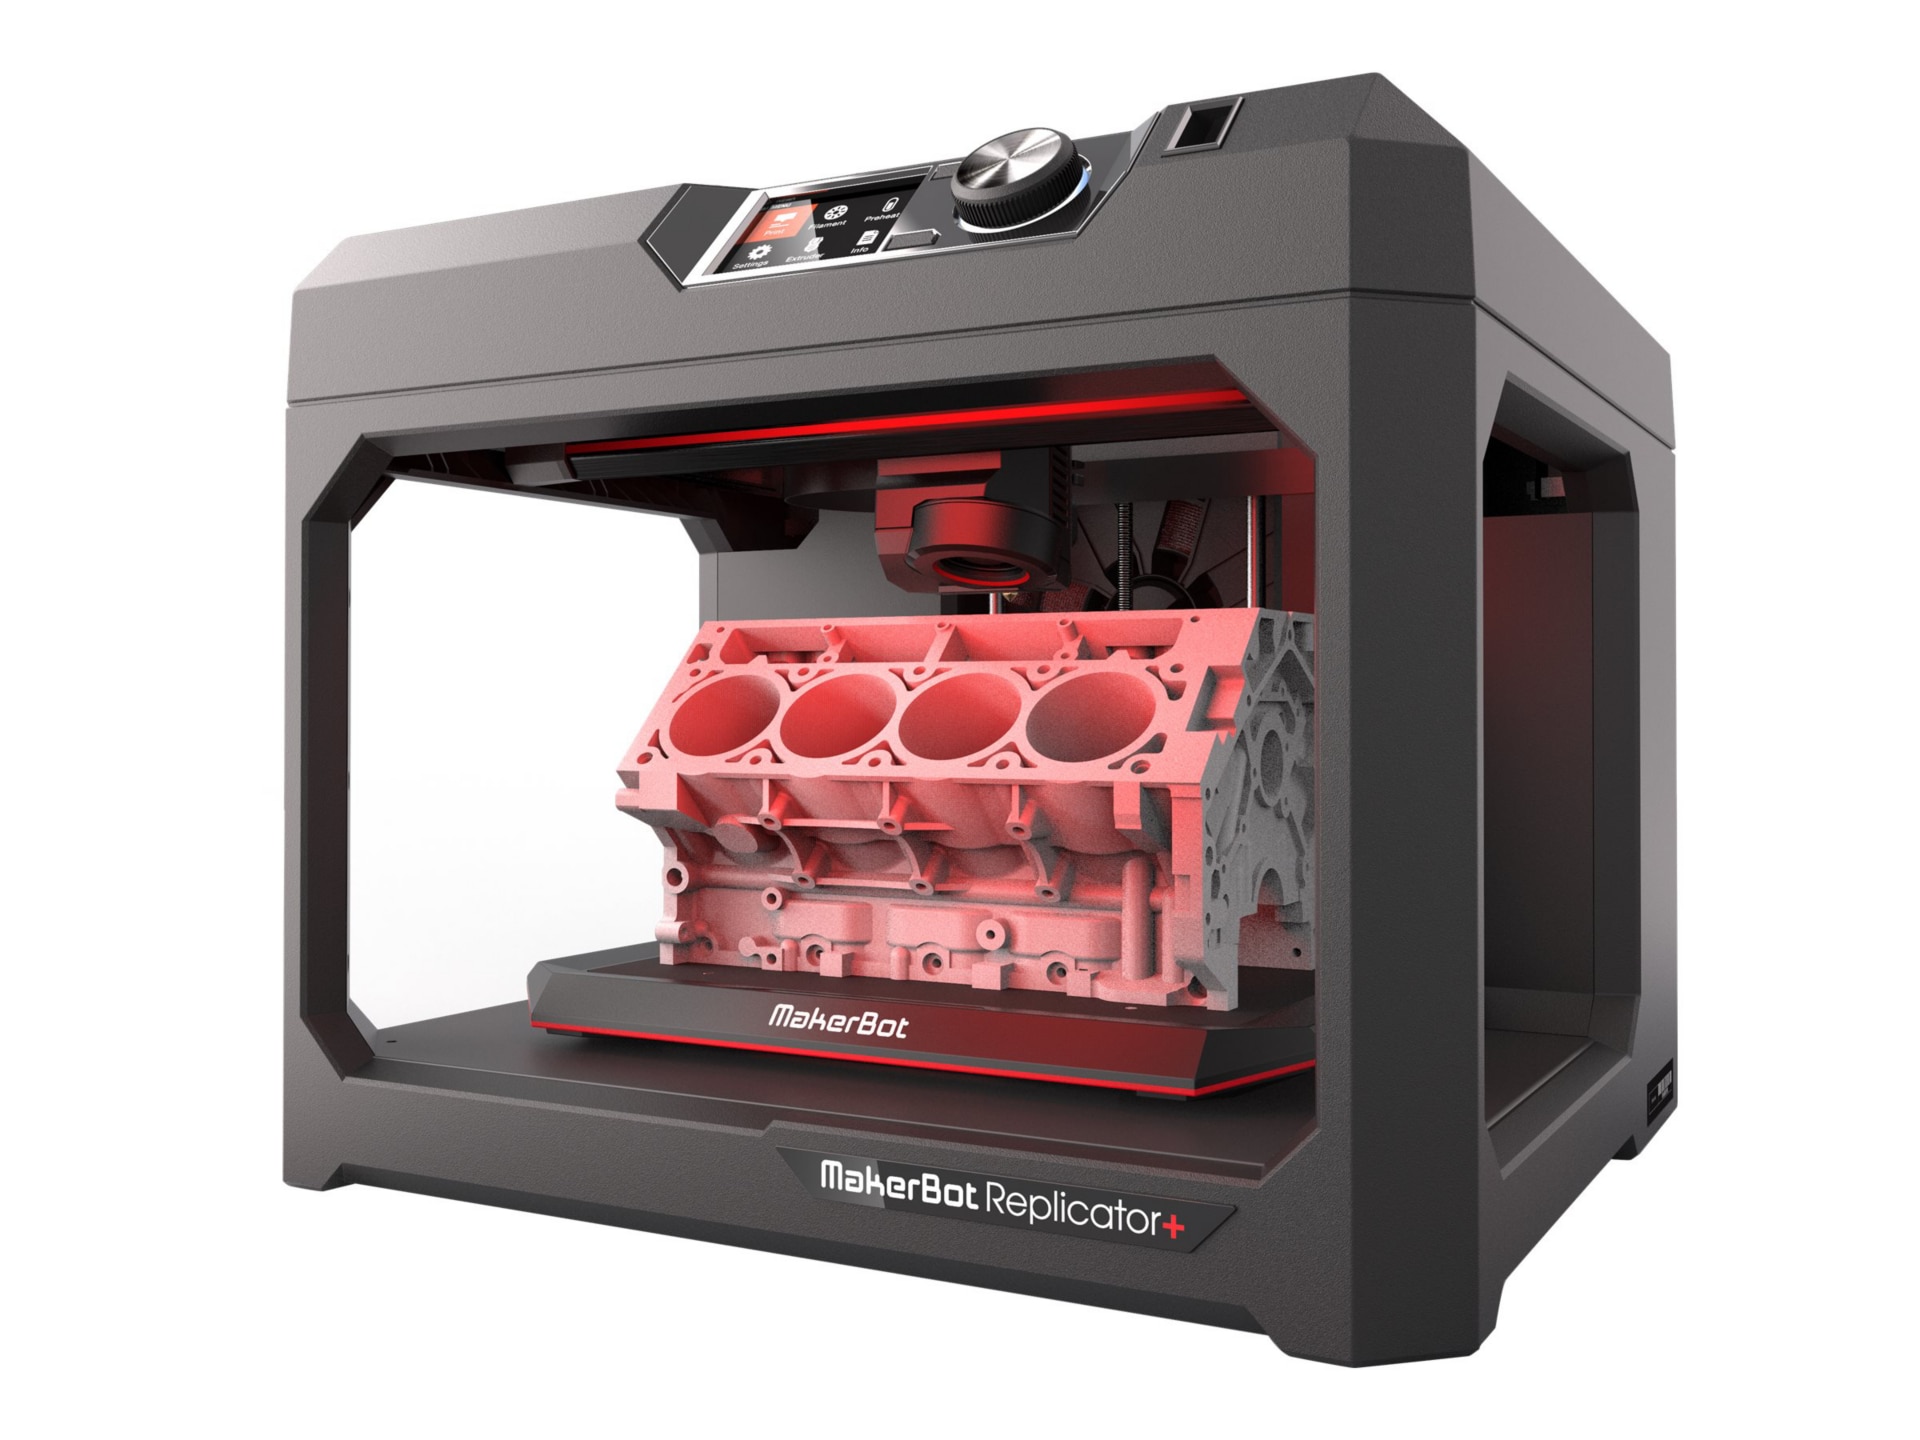 MakerBot Replicator + - 3D printer